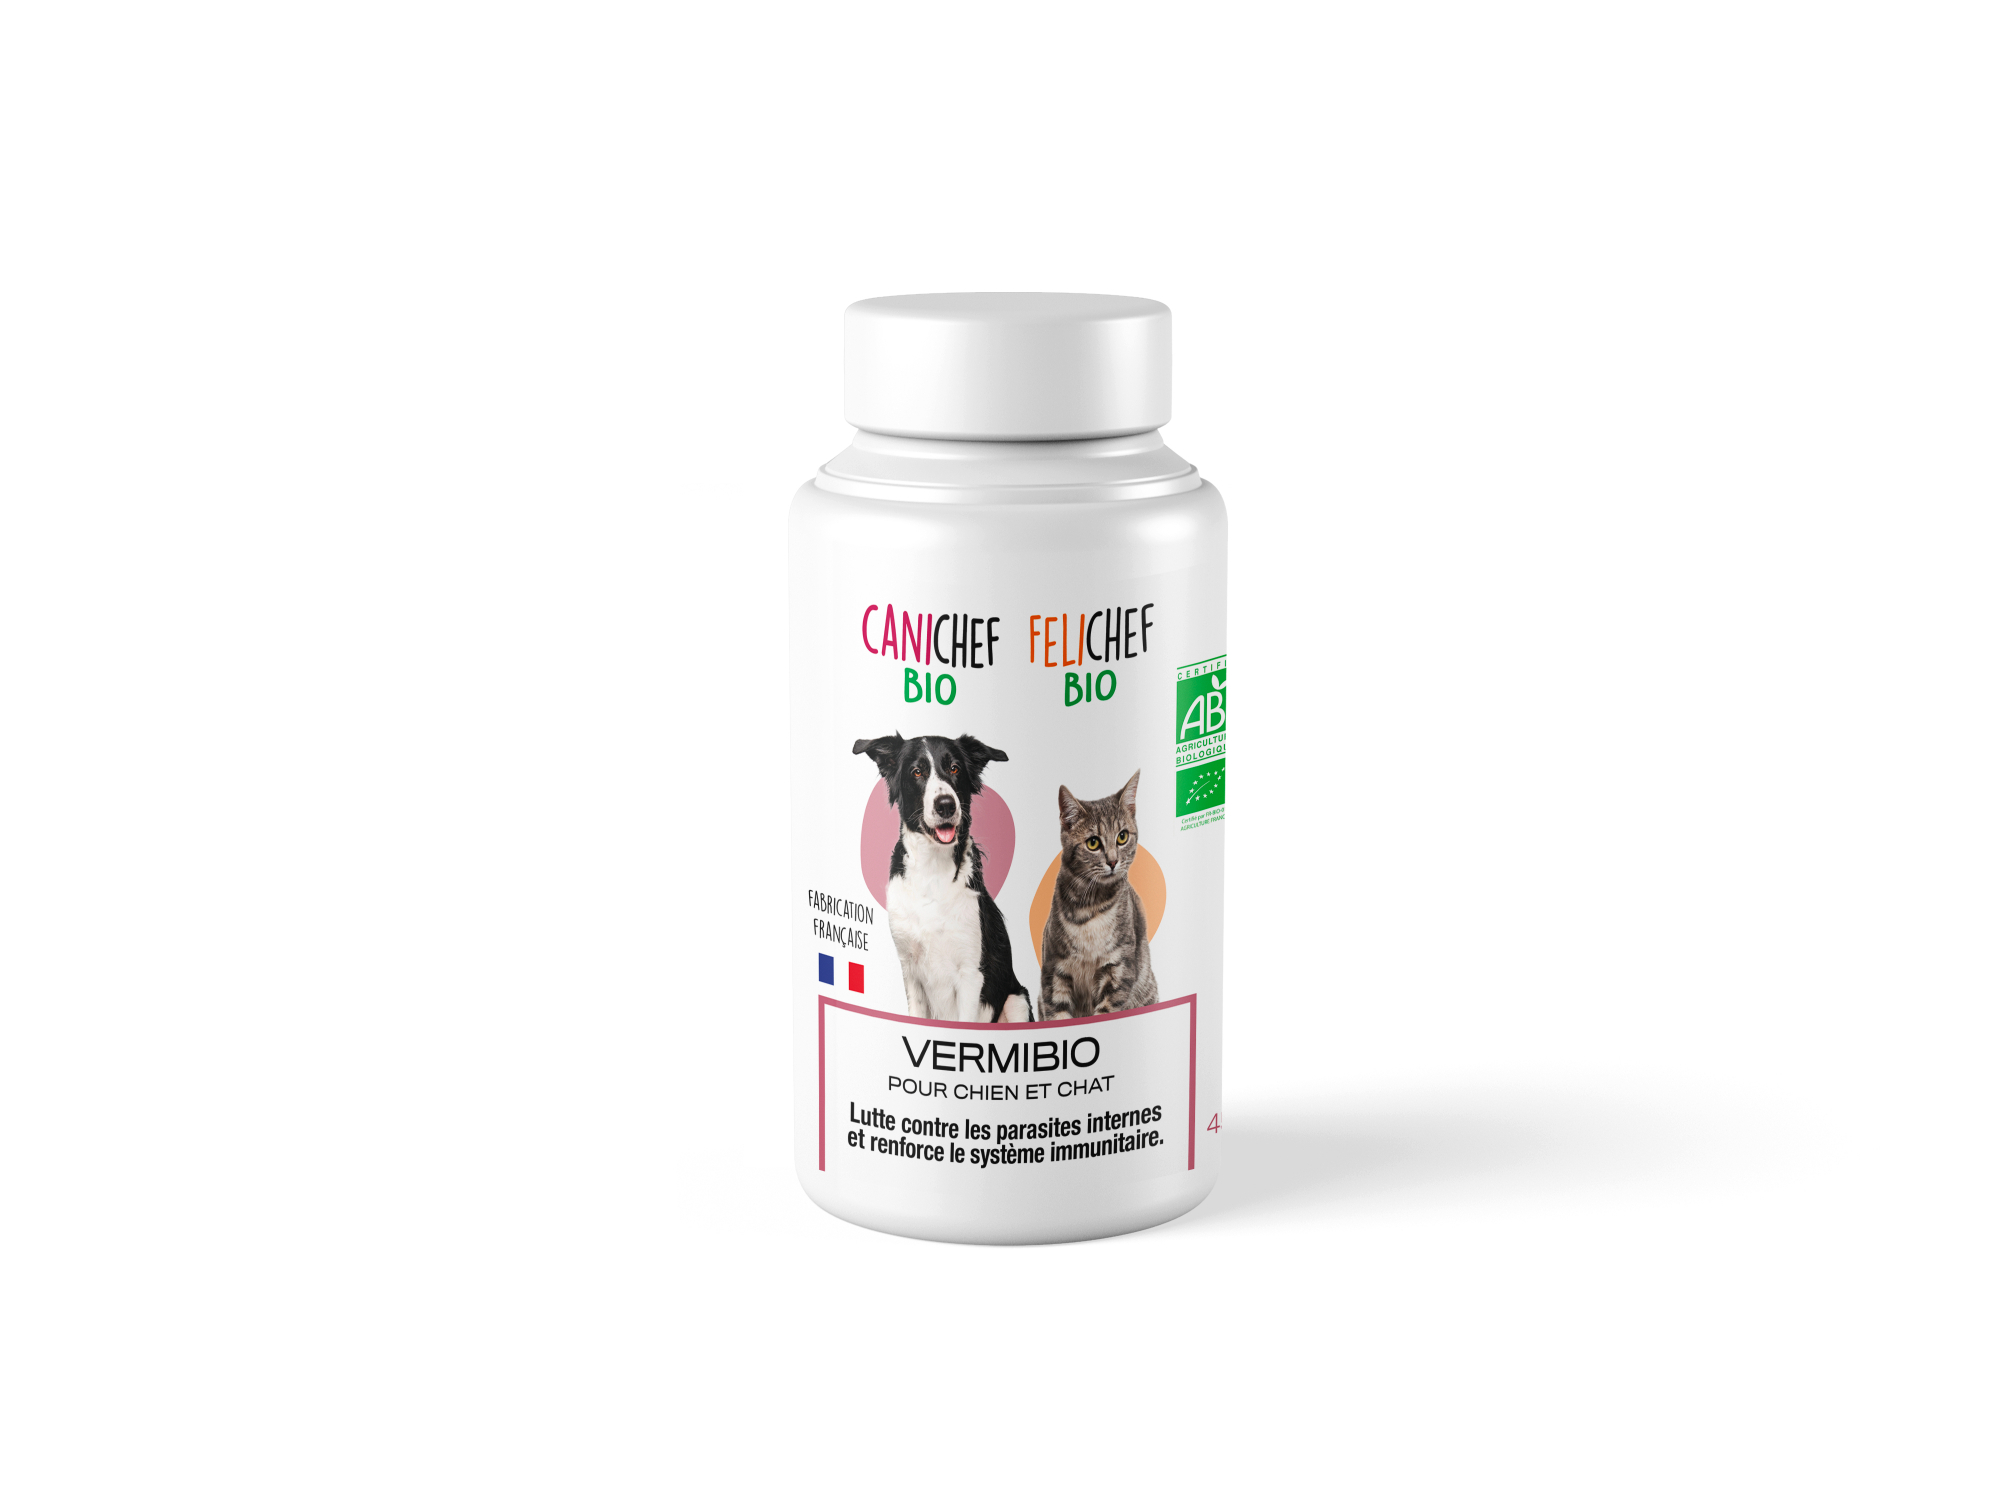 CANICHEF FELICHEF BIO Vermibio Ergänzungsfuttermittel für Hunde und Katzen